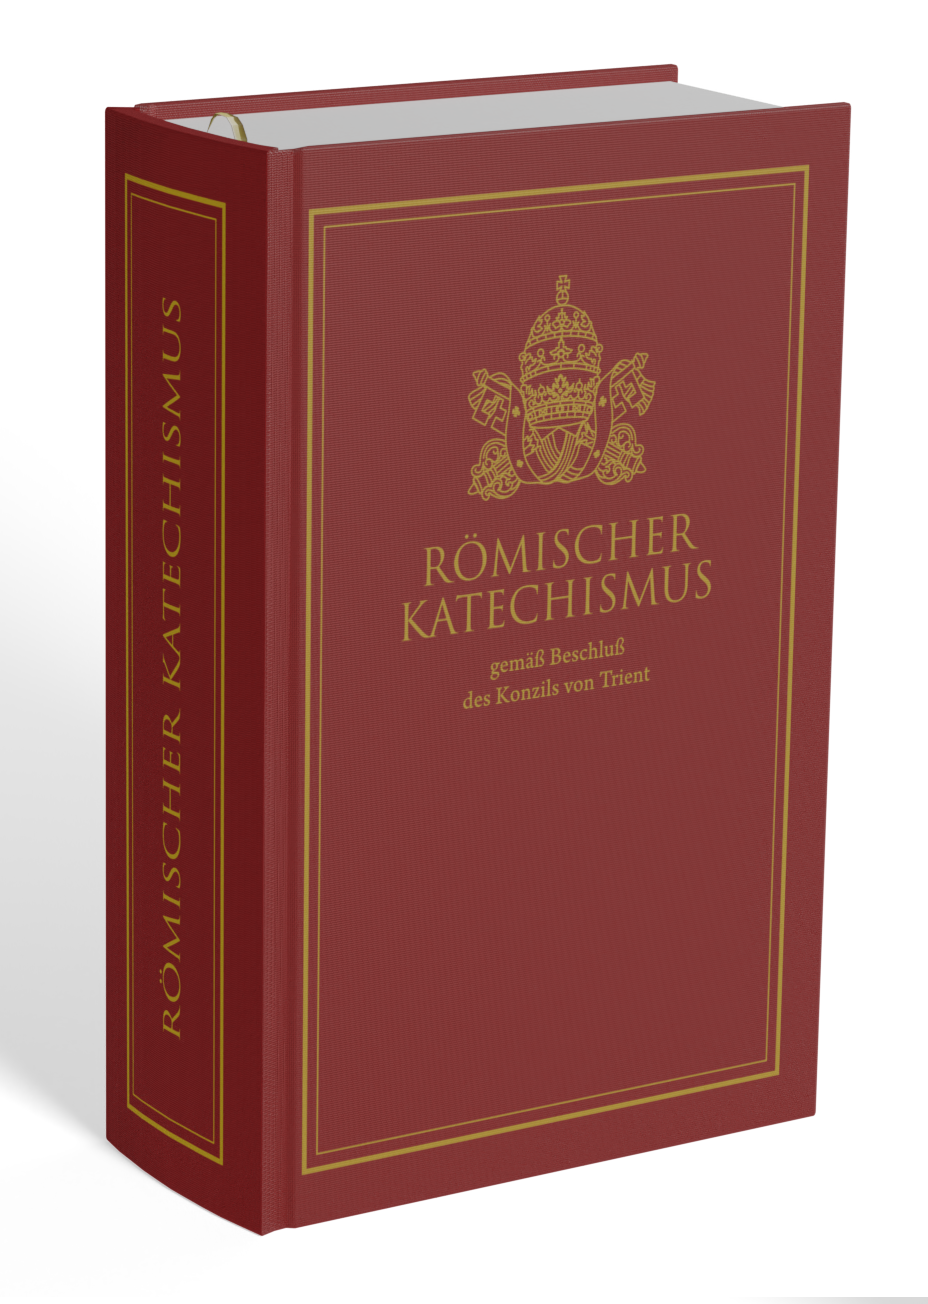 Römischer Katechismus gemäß Beschluß des Konzils von Trient